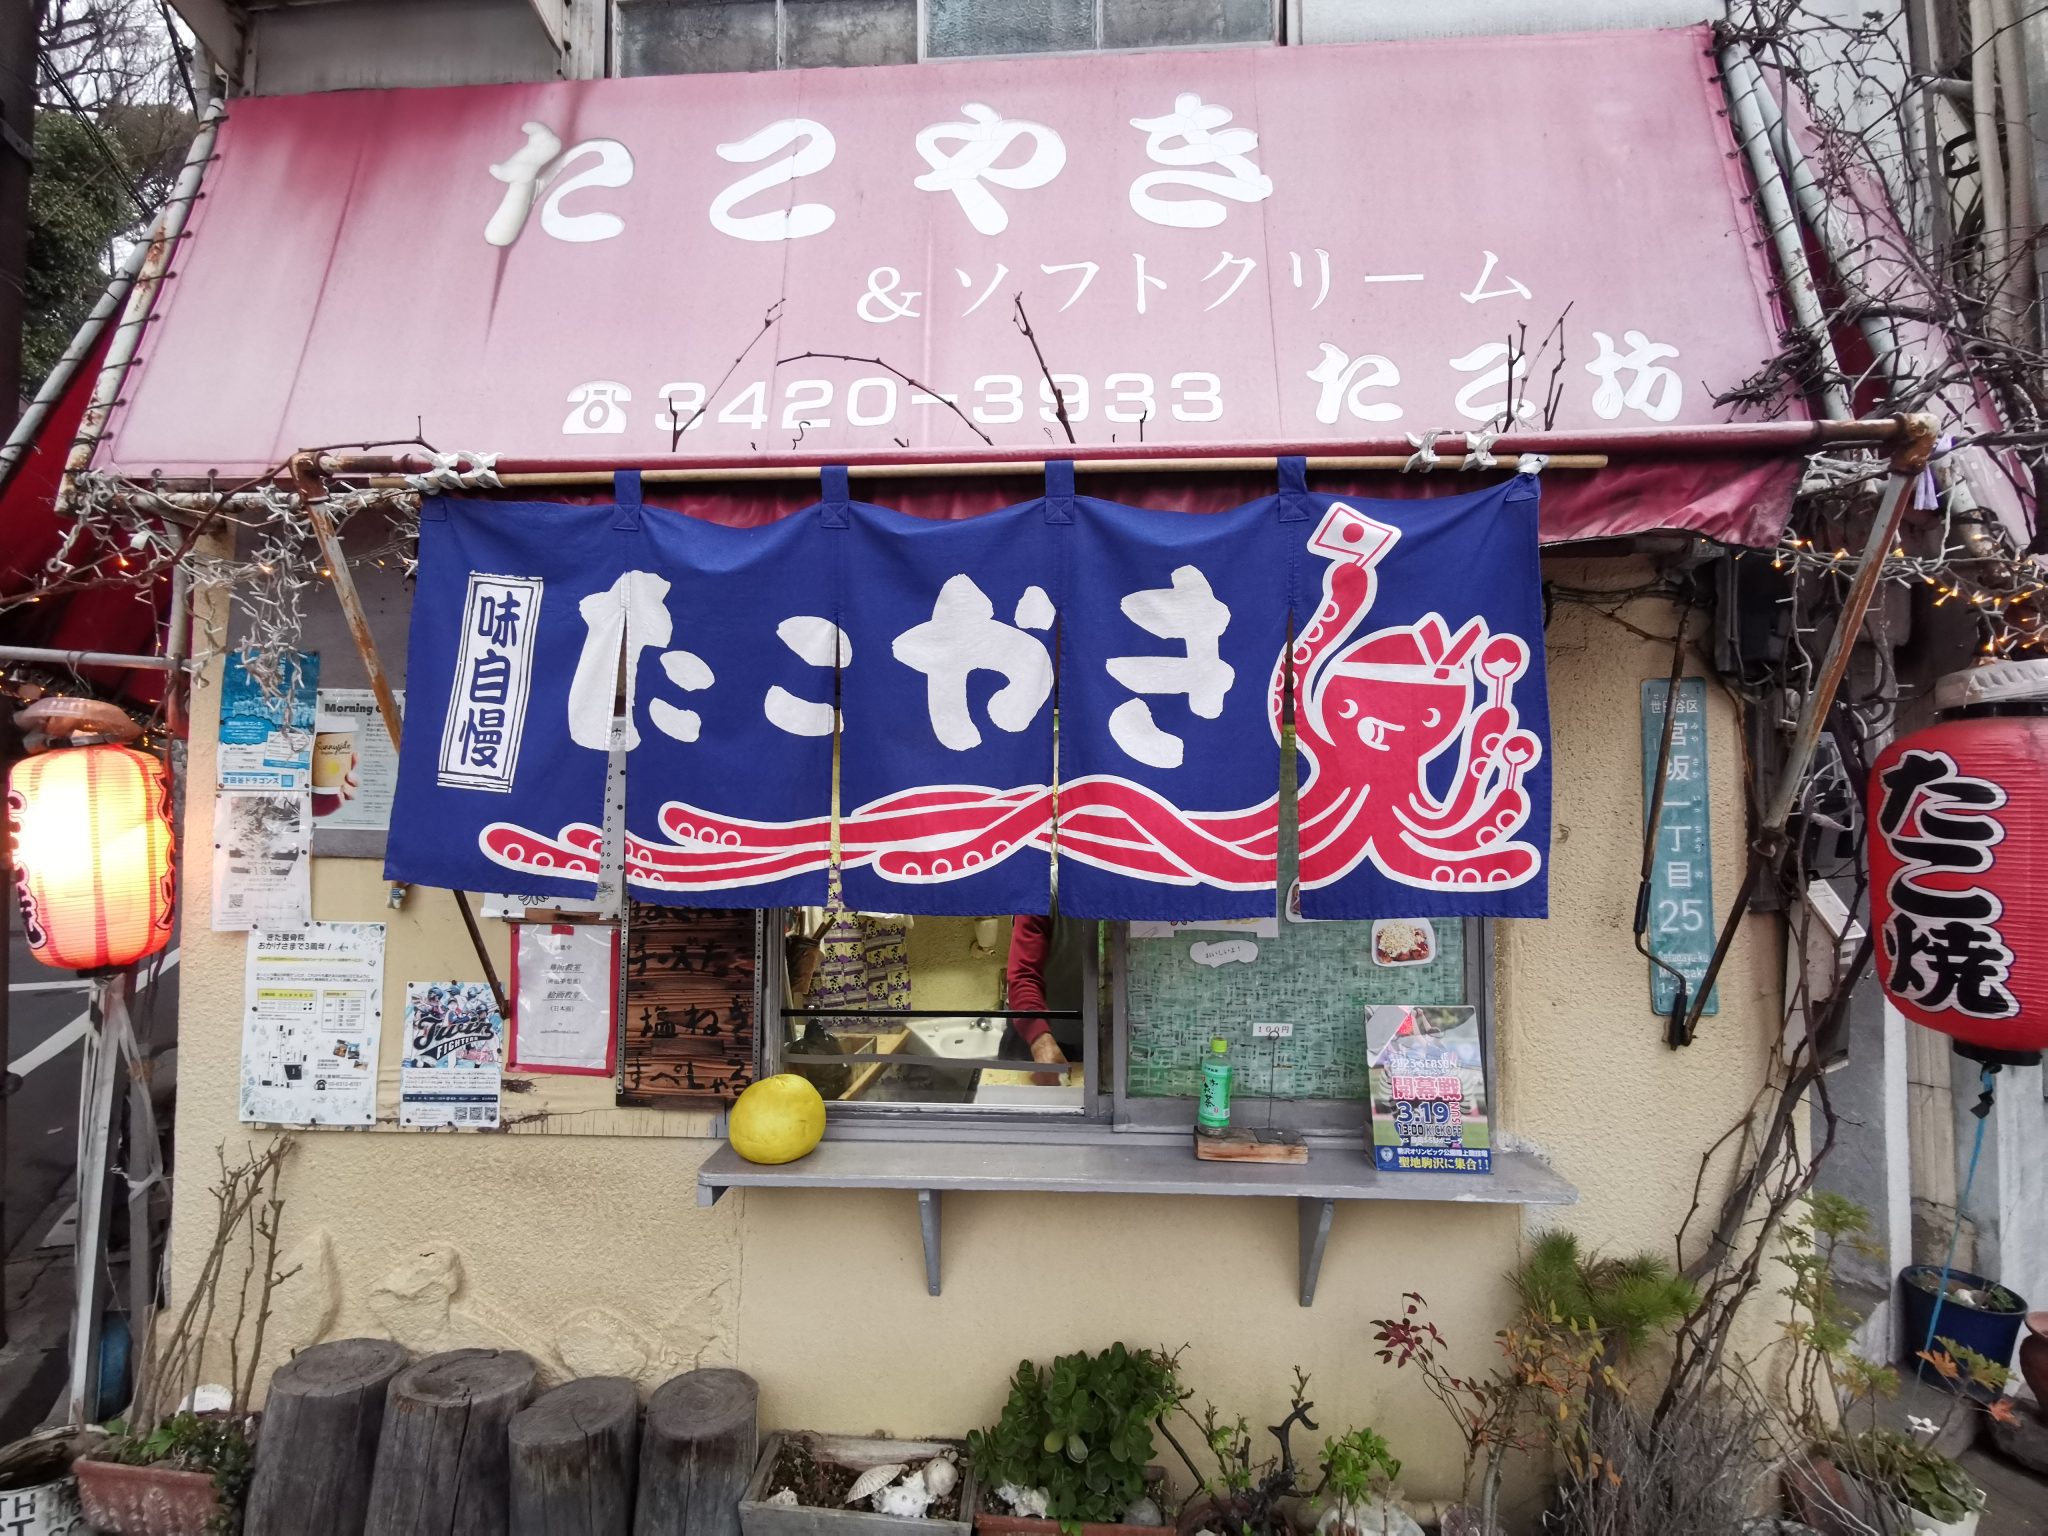 Takoyaki shop in Tokyo. Osaka's soul food found in Tokyo.